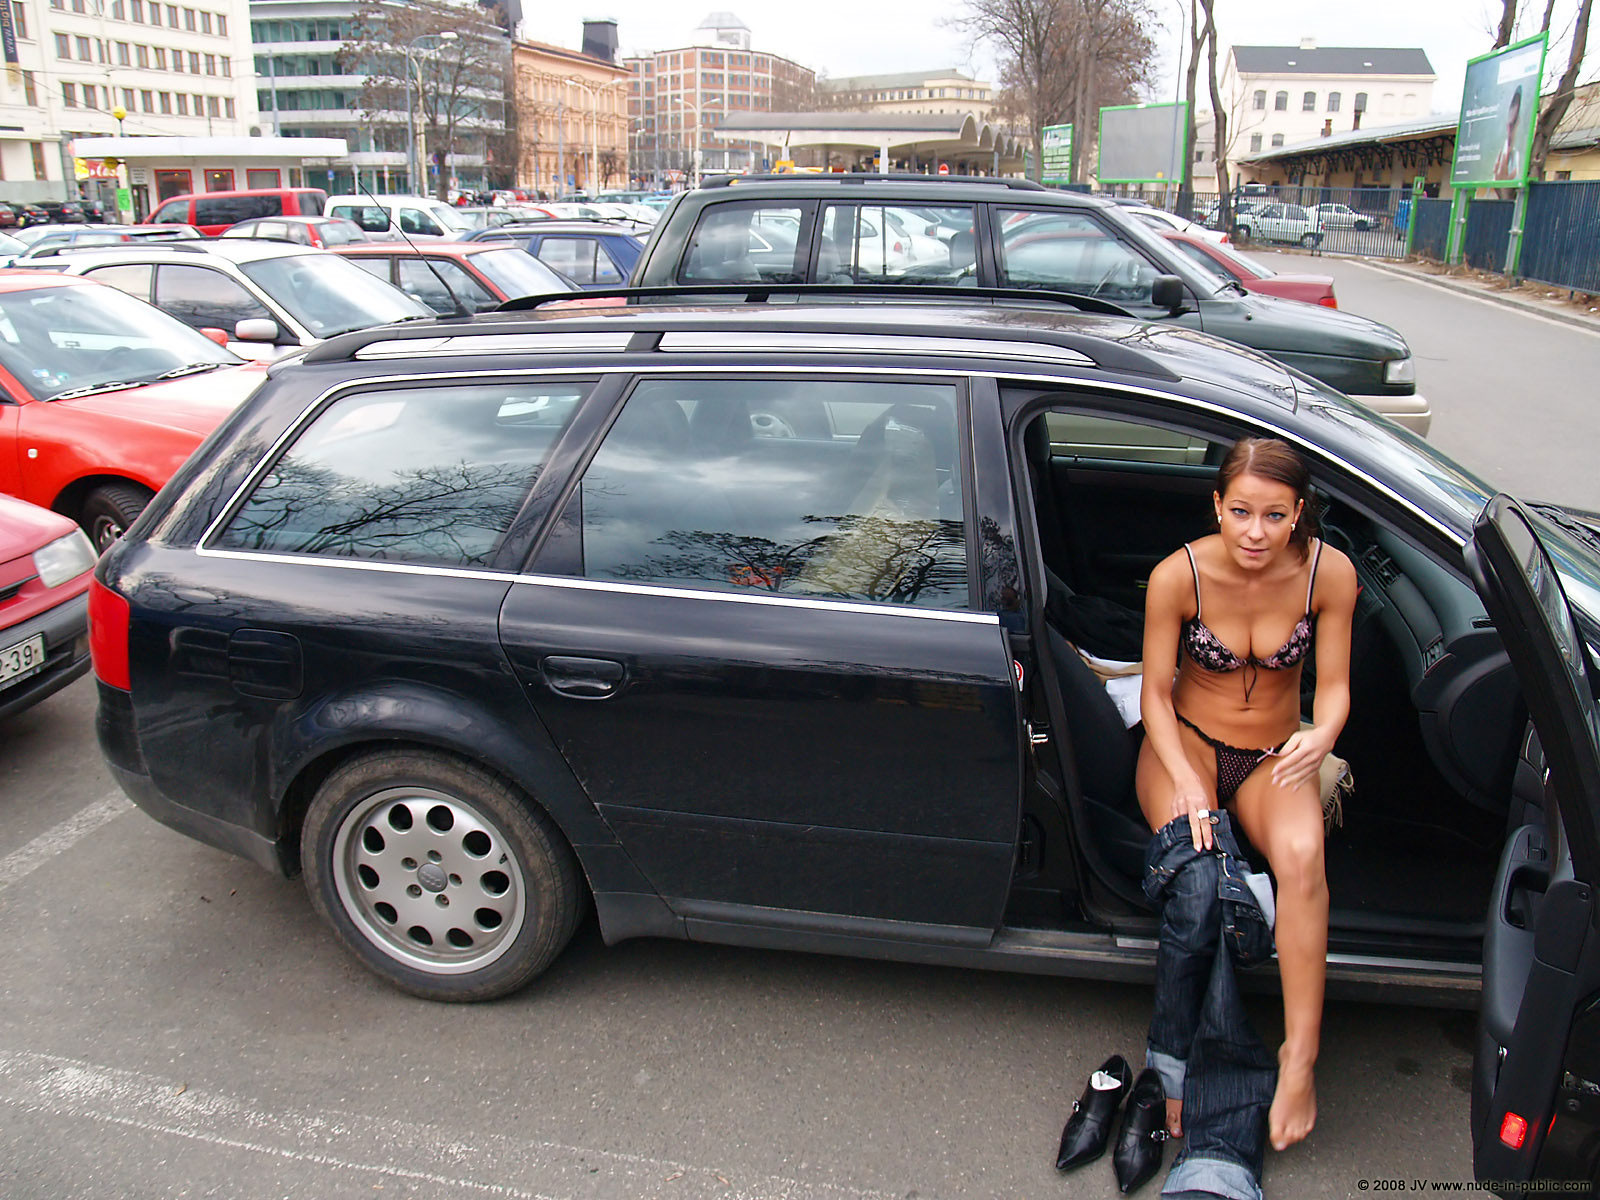 melisa-u-car-audi-flash-on-parking-nude-in-public-10